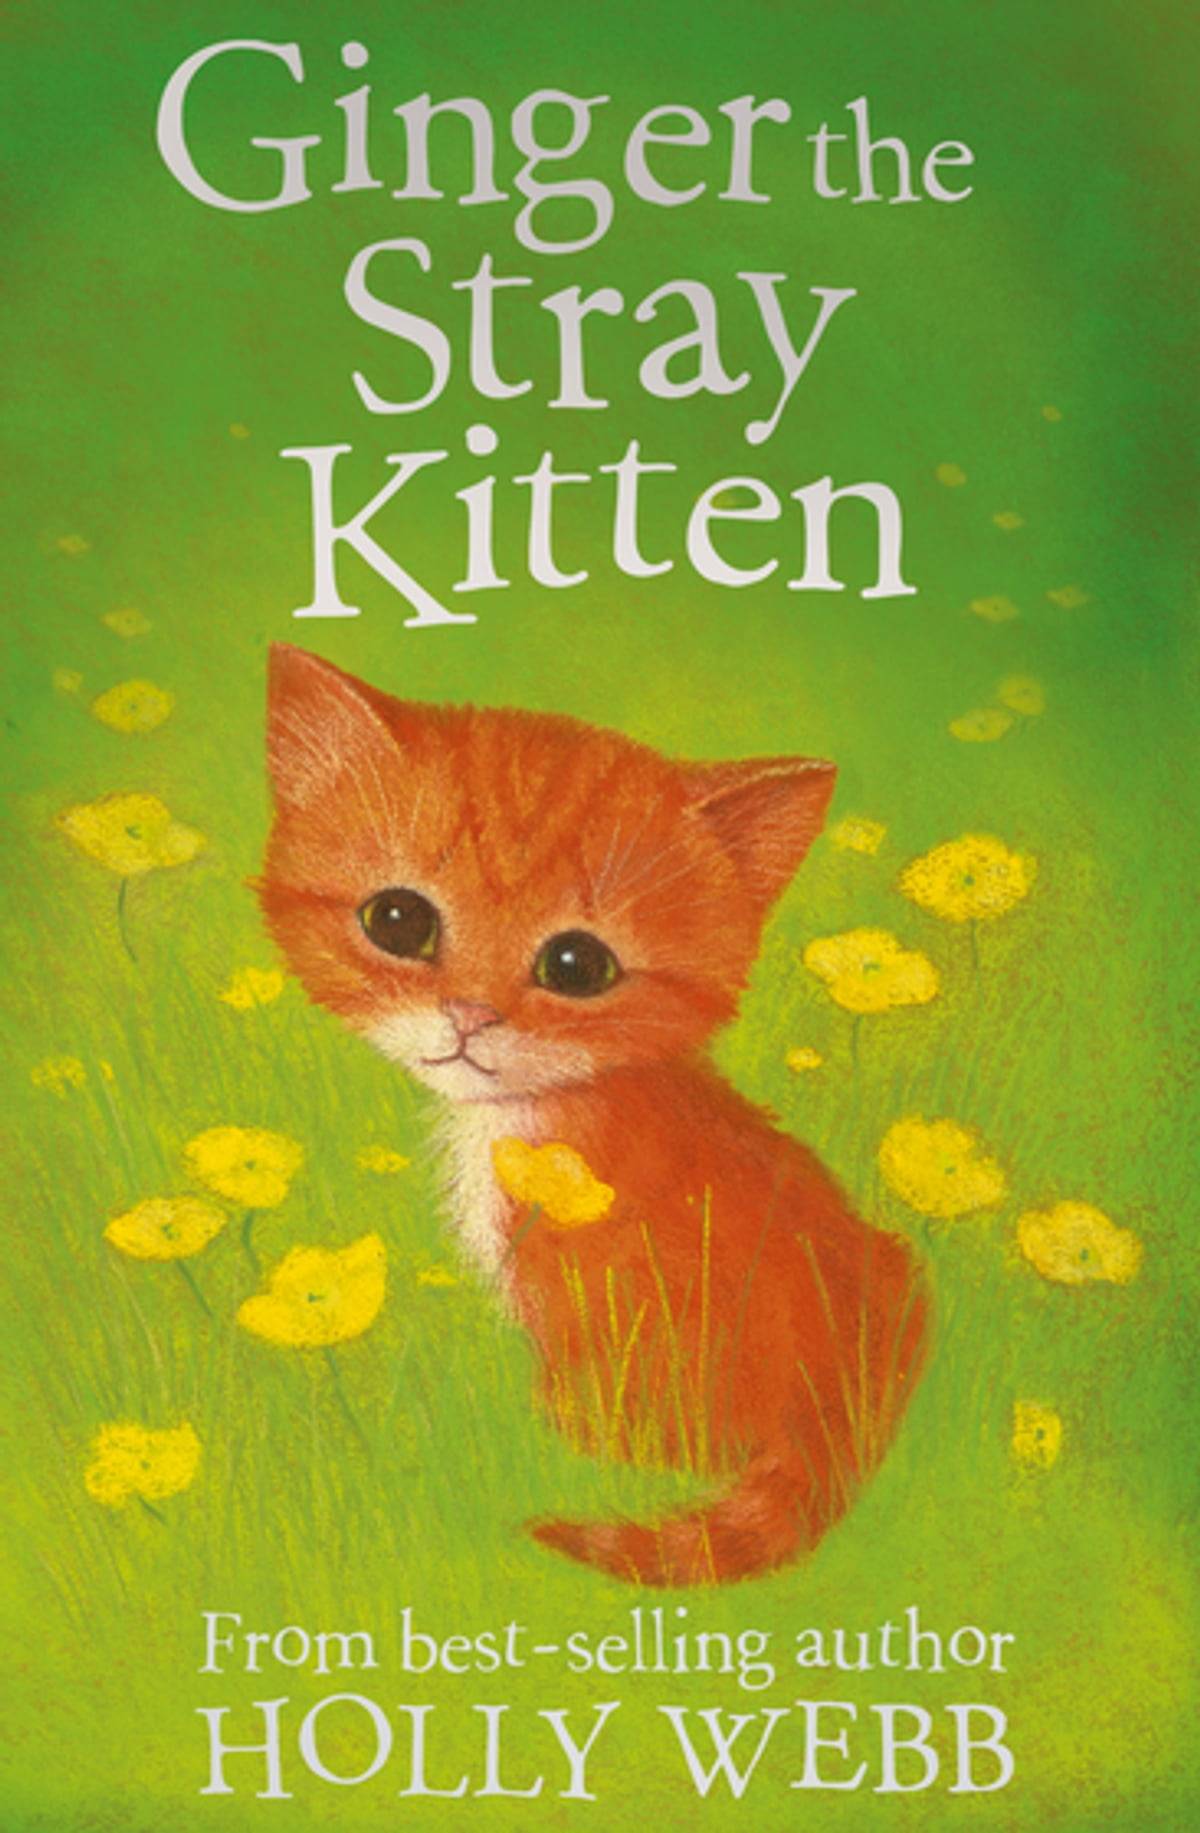 IMG : Ginger the Stray Kitten